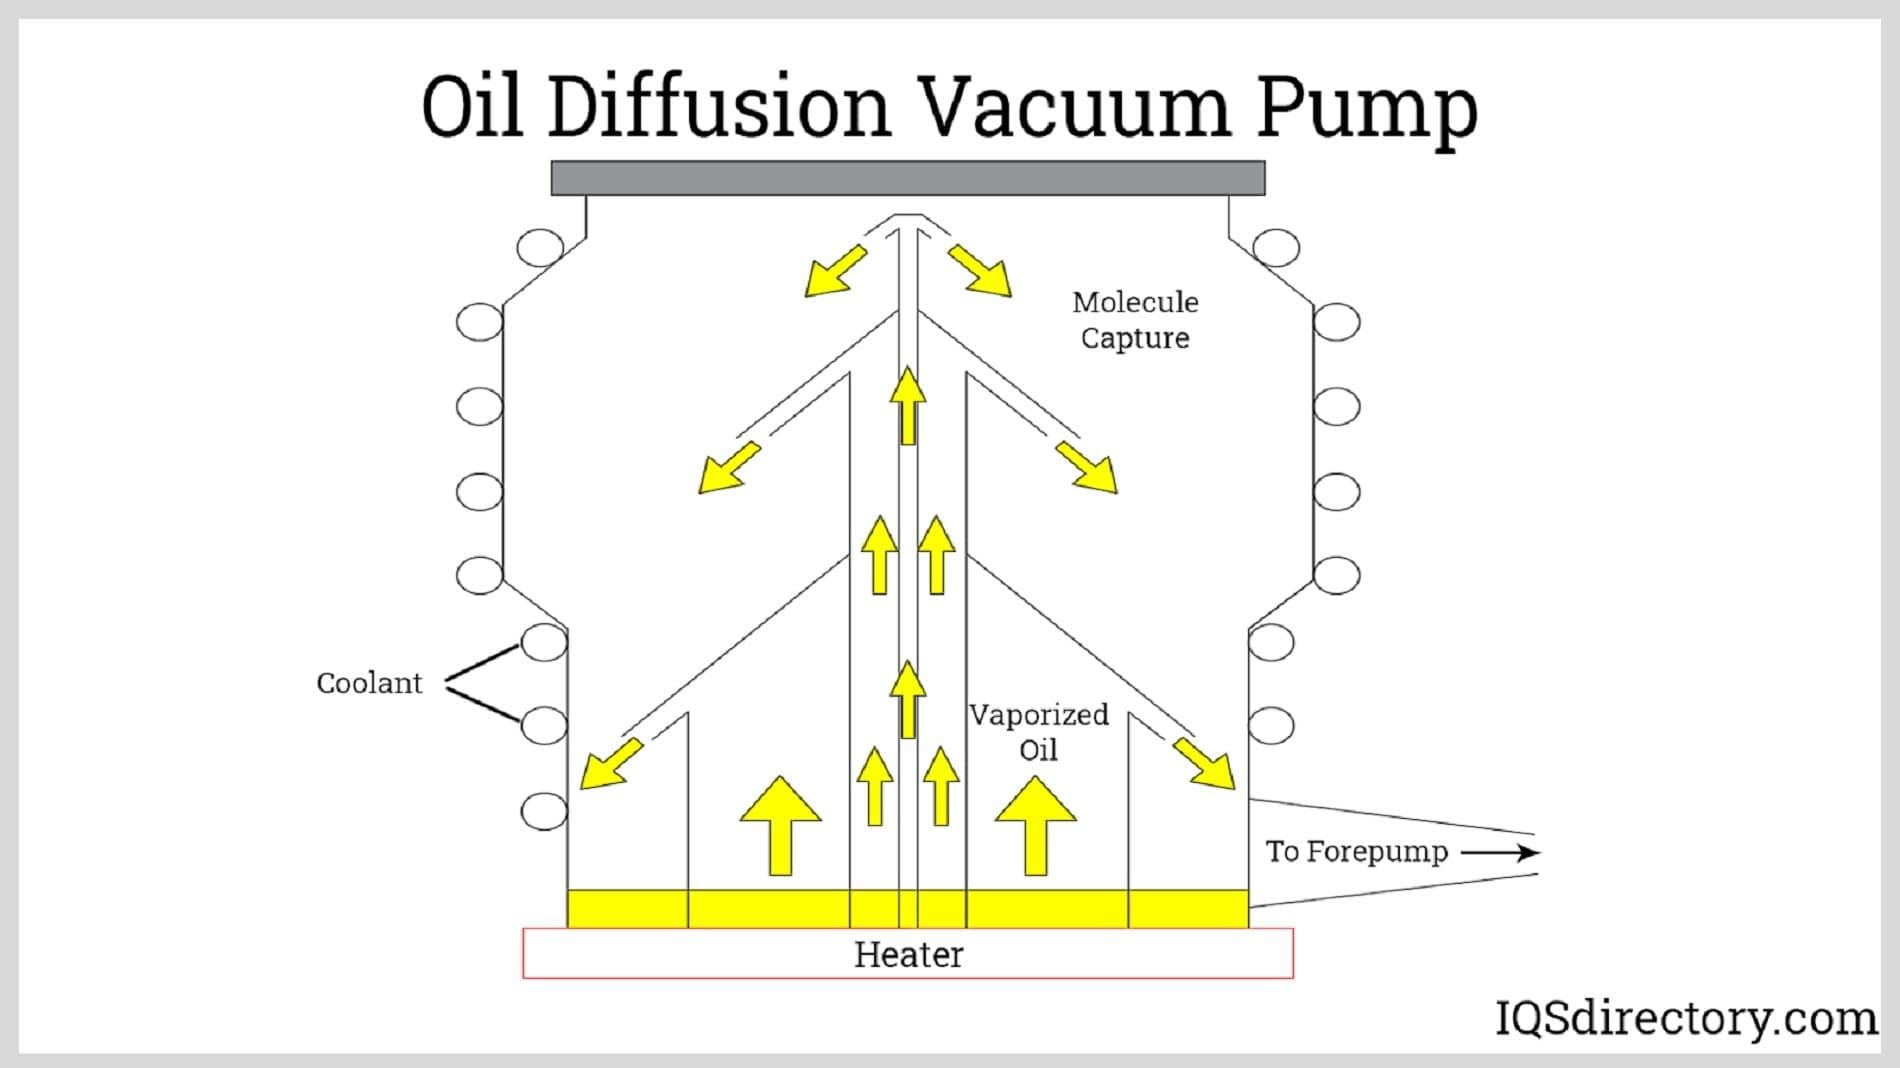 Oil Diffusion Vacuum Pump